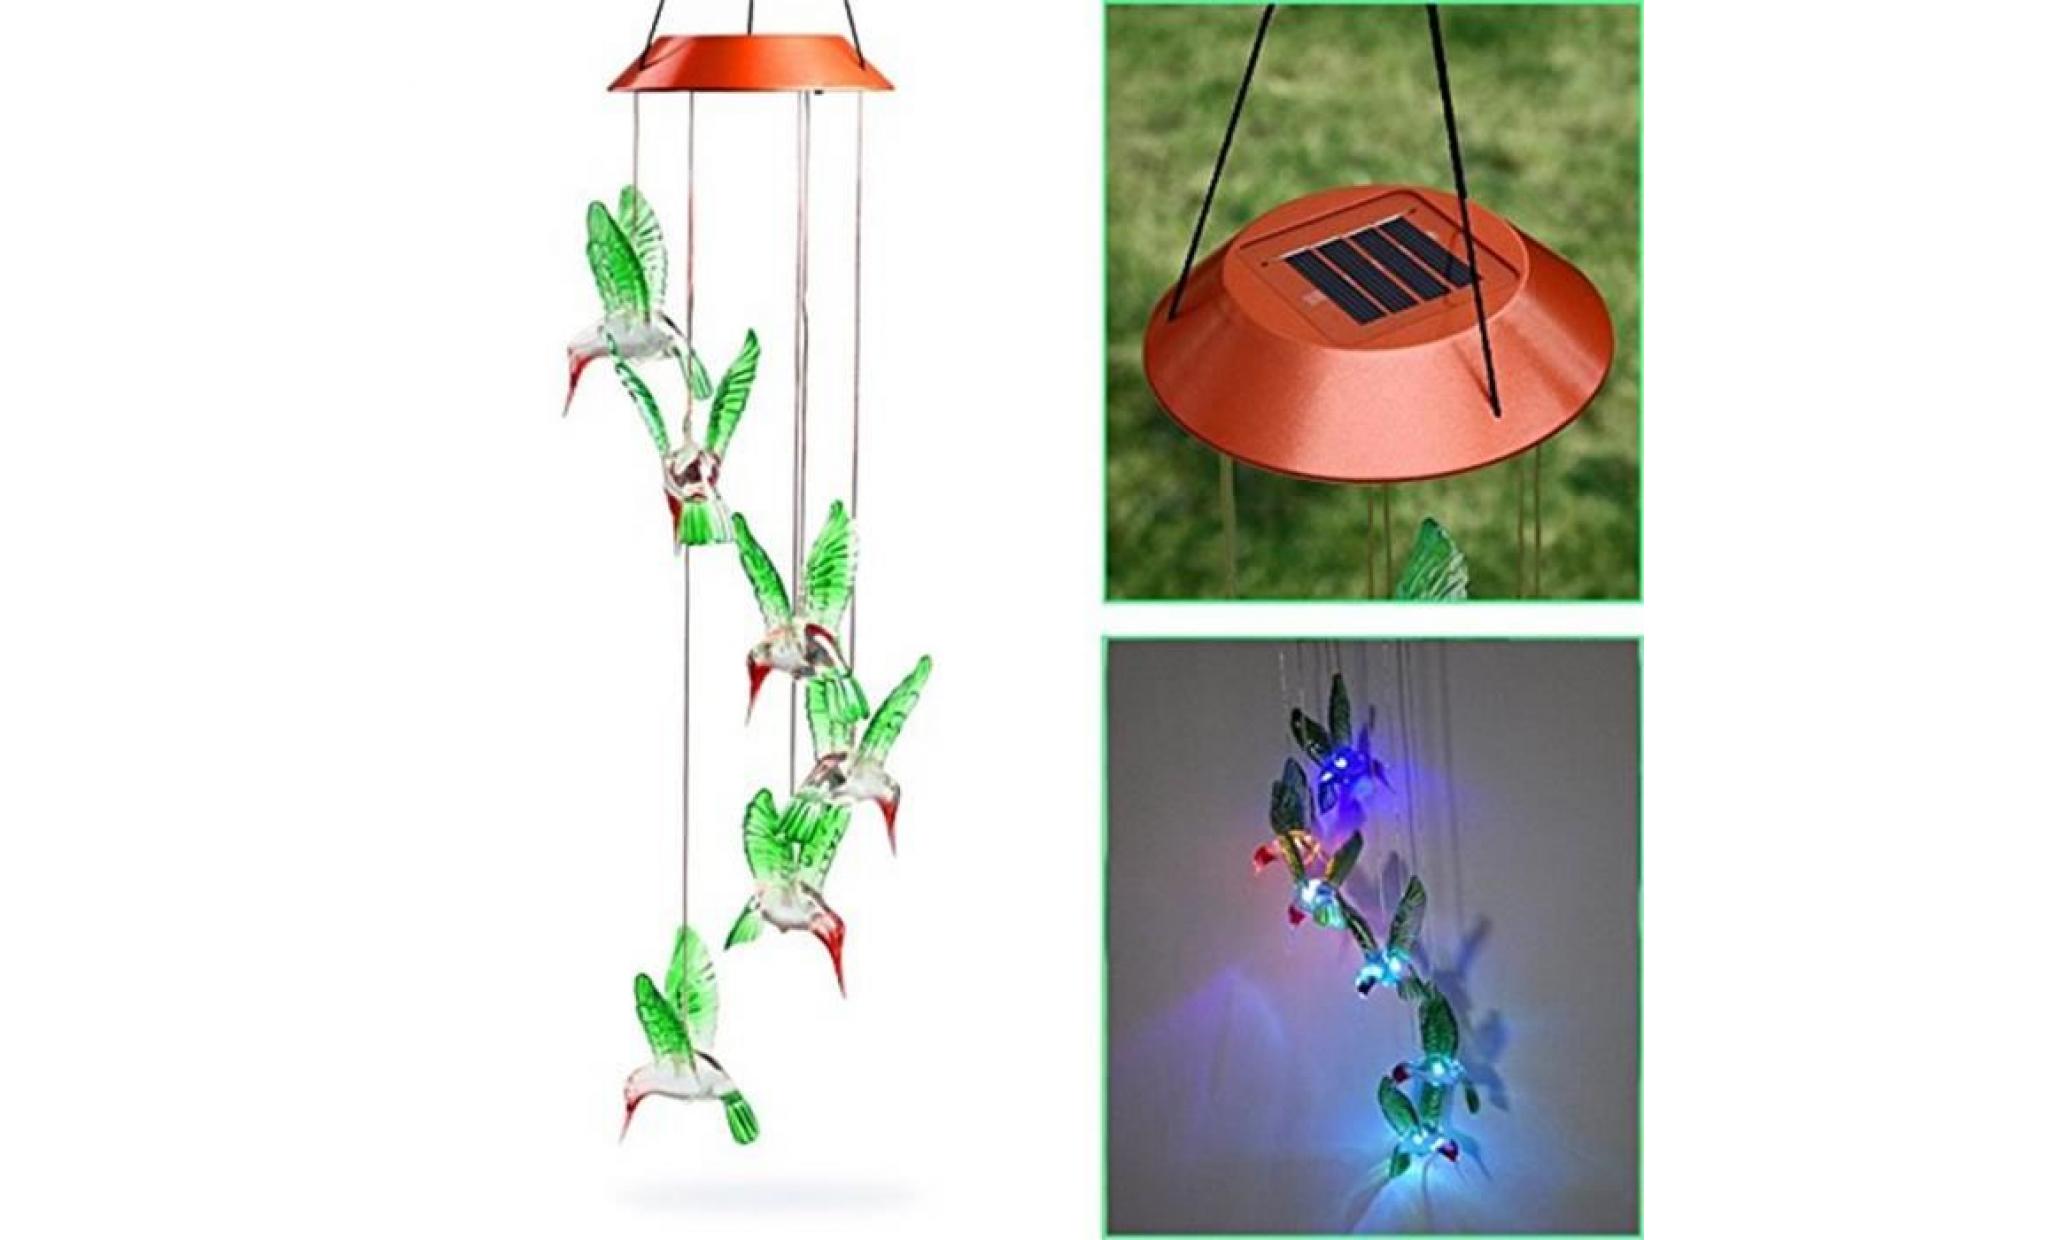 couleur changeant le vent solaire de colibri de carillon de vent de led pour l'éclairage de jardinage hjn1980